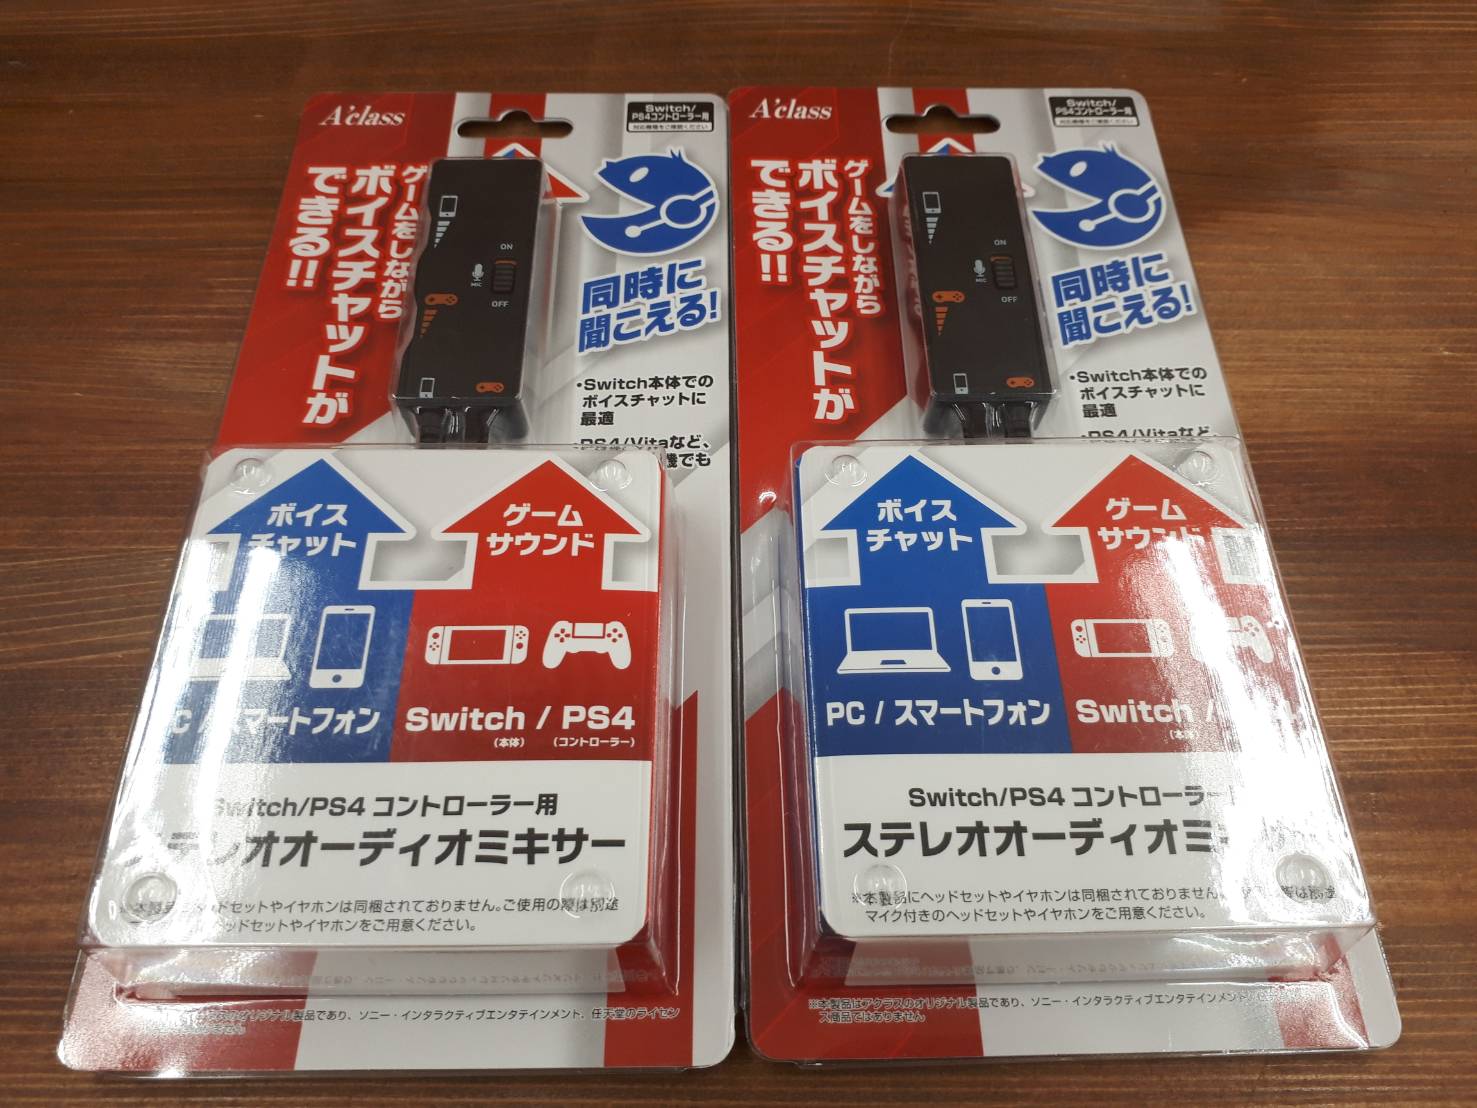 7 7 ゲーム入荷情報 Nintendo Switch Ps4用ステレオオーディオミキサー 入荷しました ゲーム機本体 マンガ倉庫 富山店